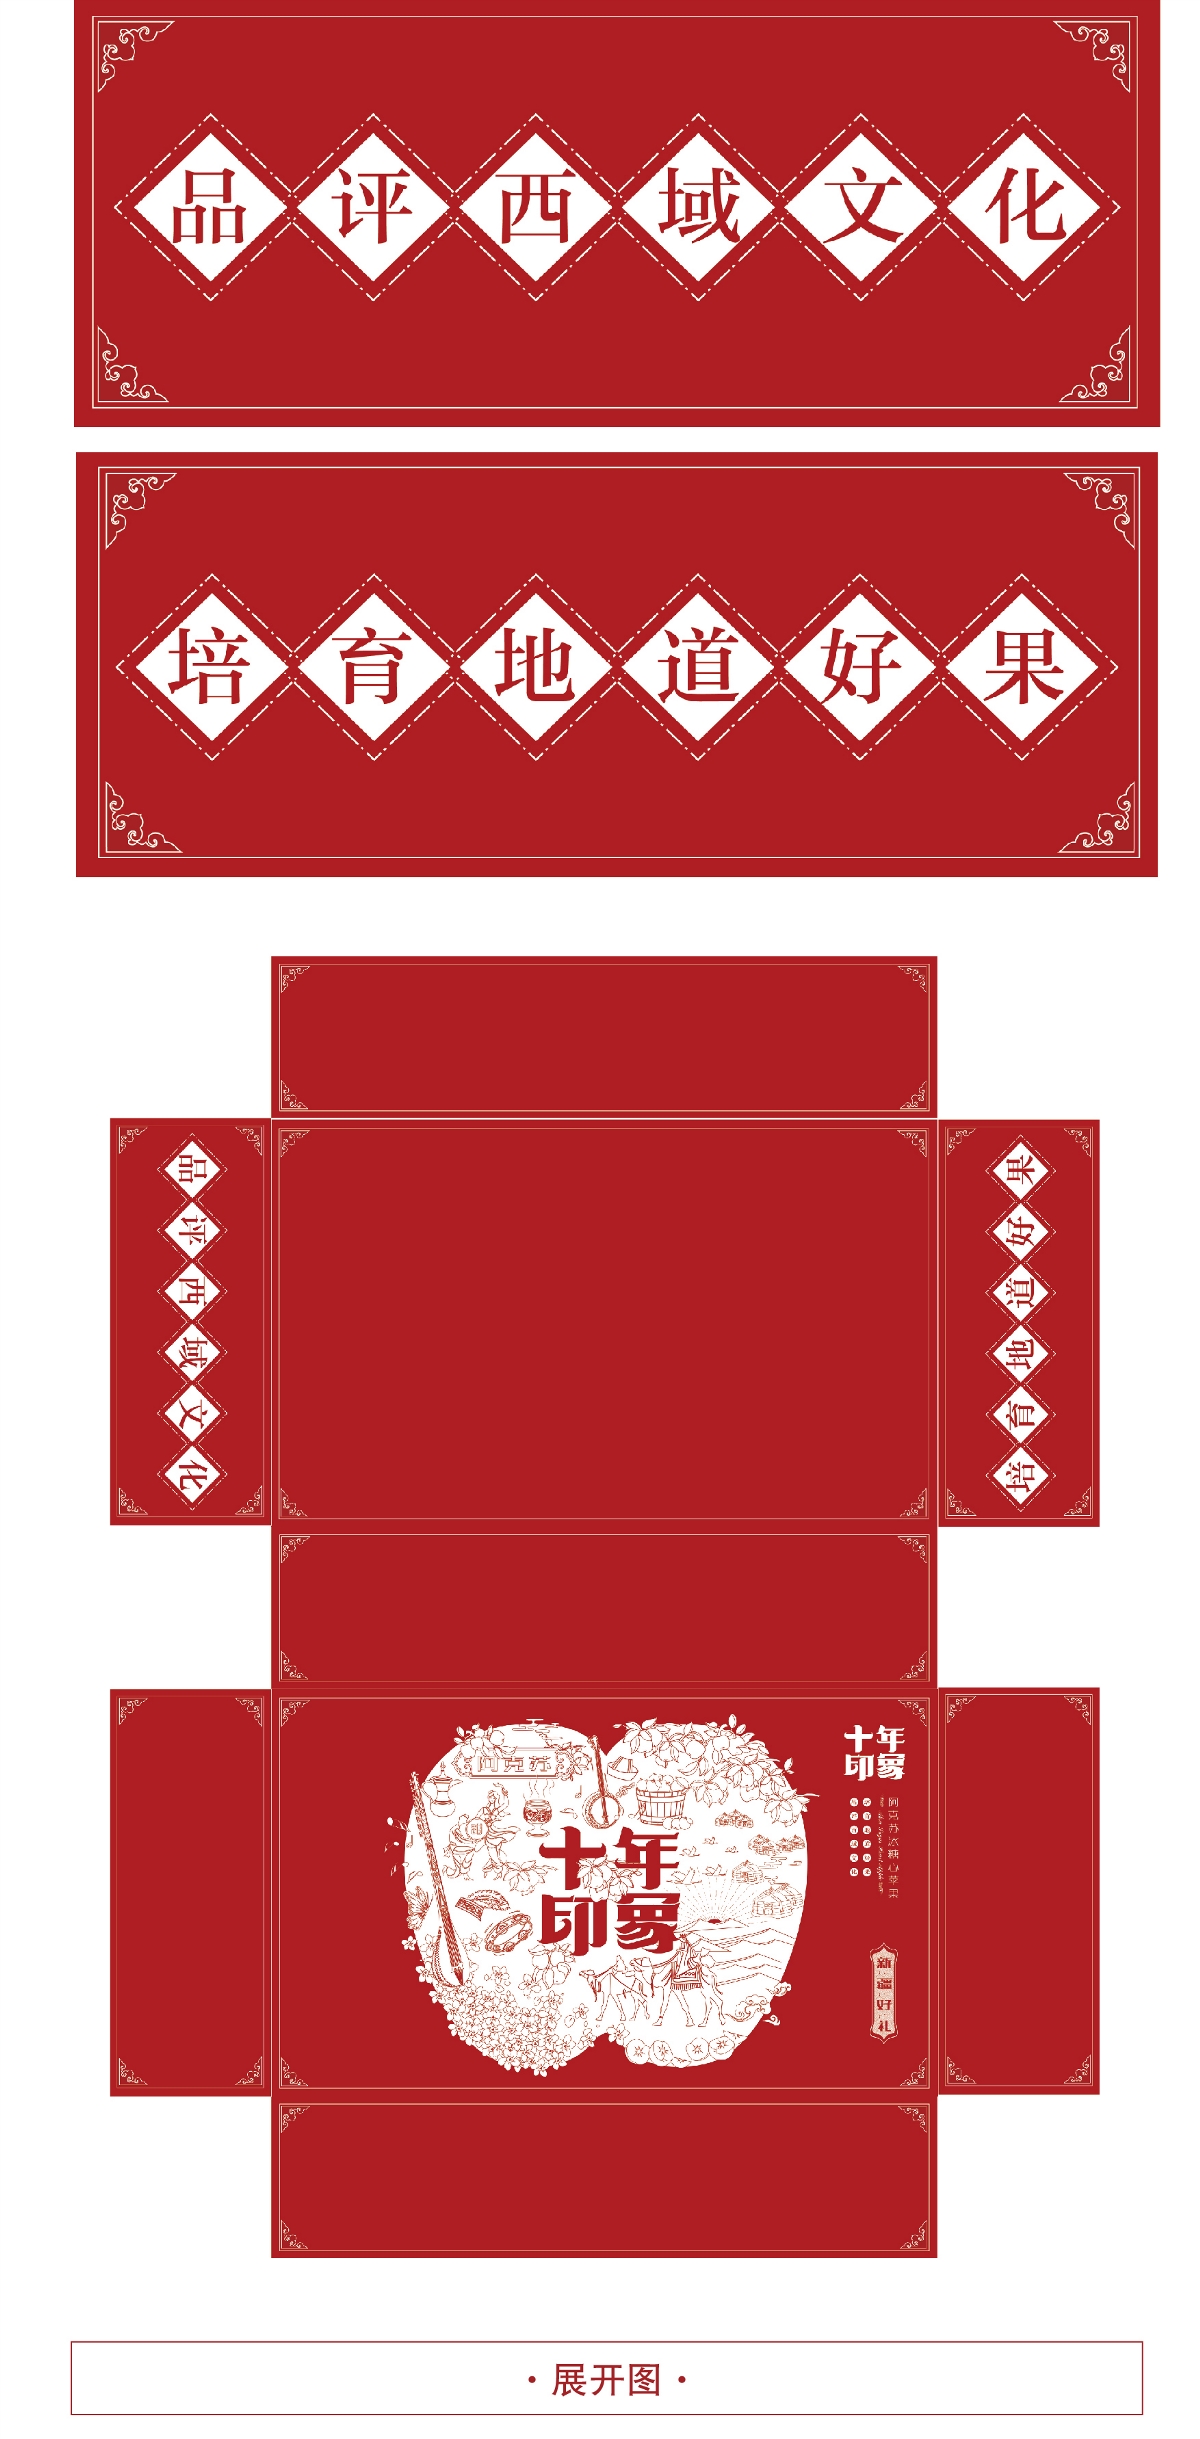 新疆苹果新年礼盒包装设计